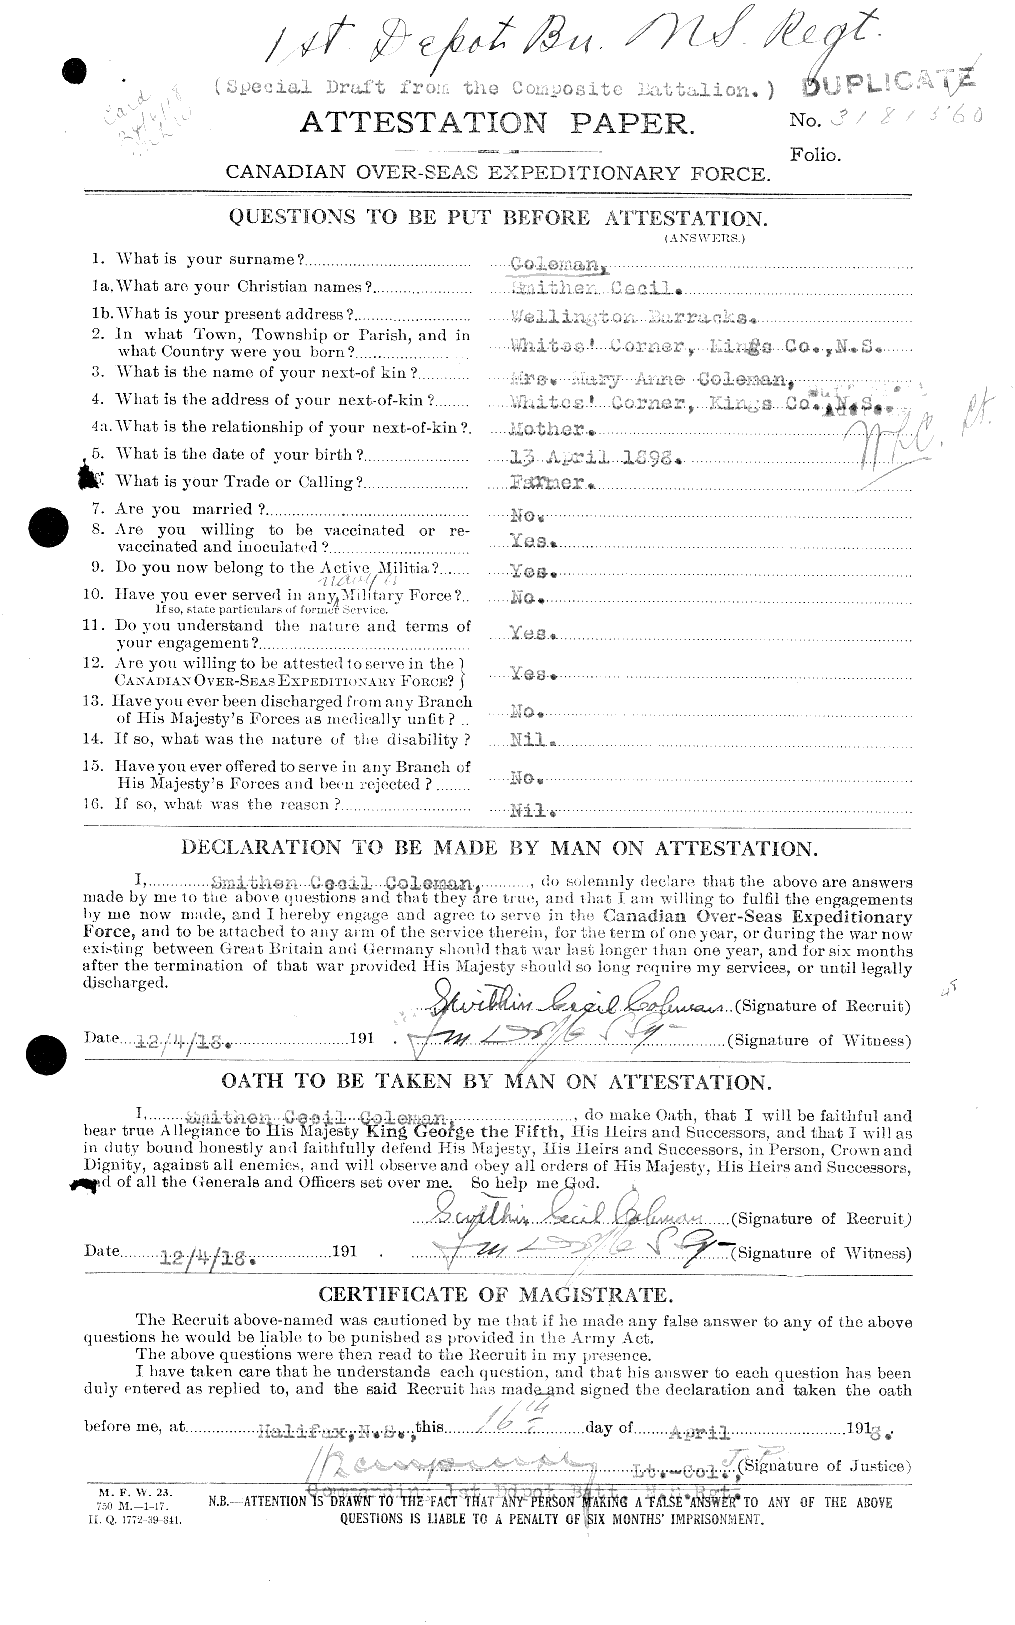 Dossiers du Personnel de la Première Guerre mondiale - CEC 028267a